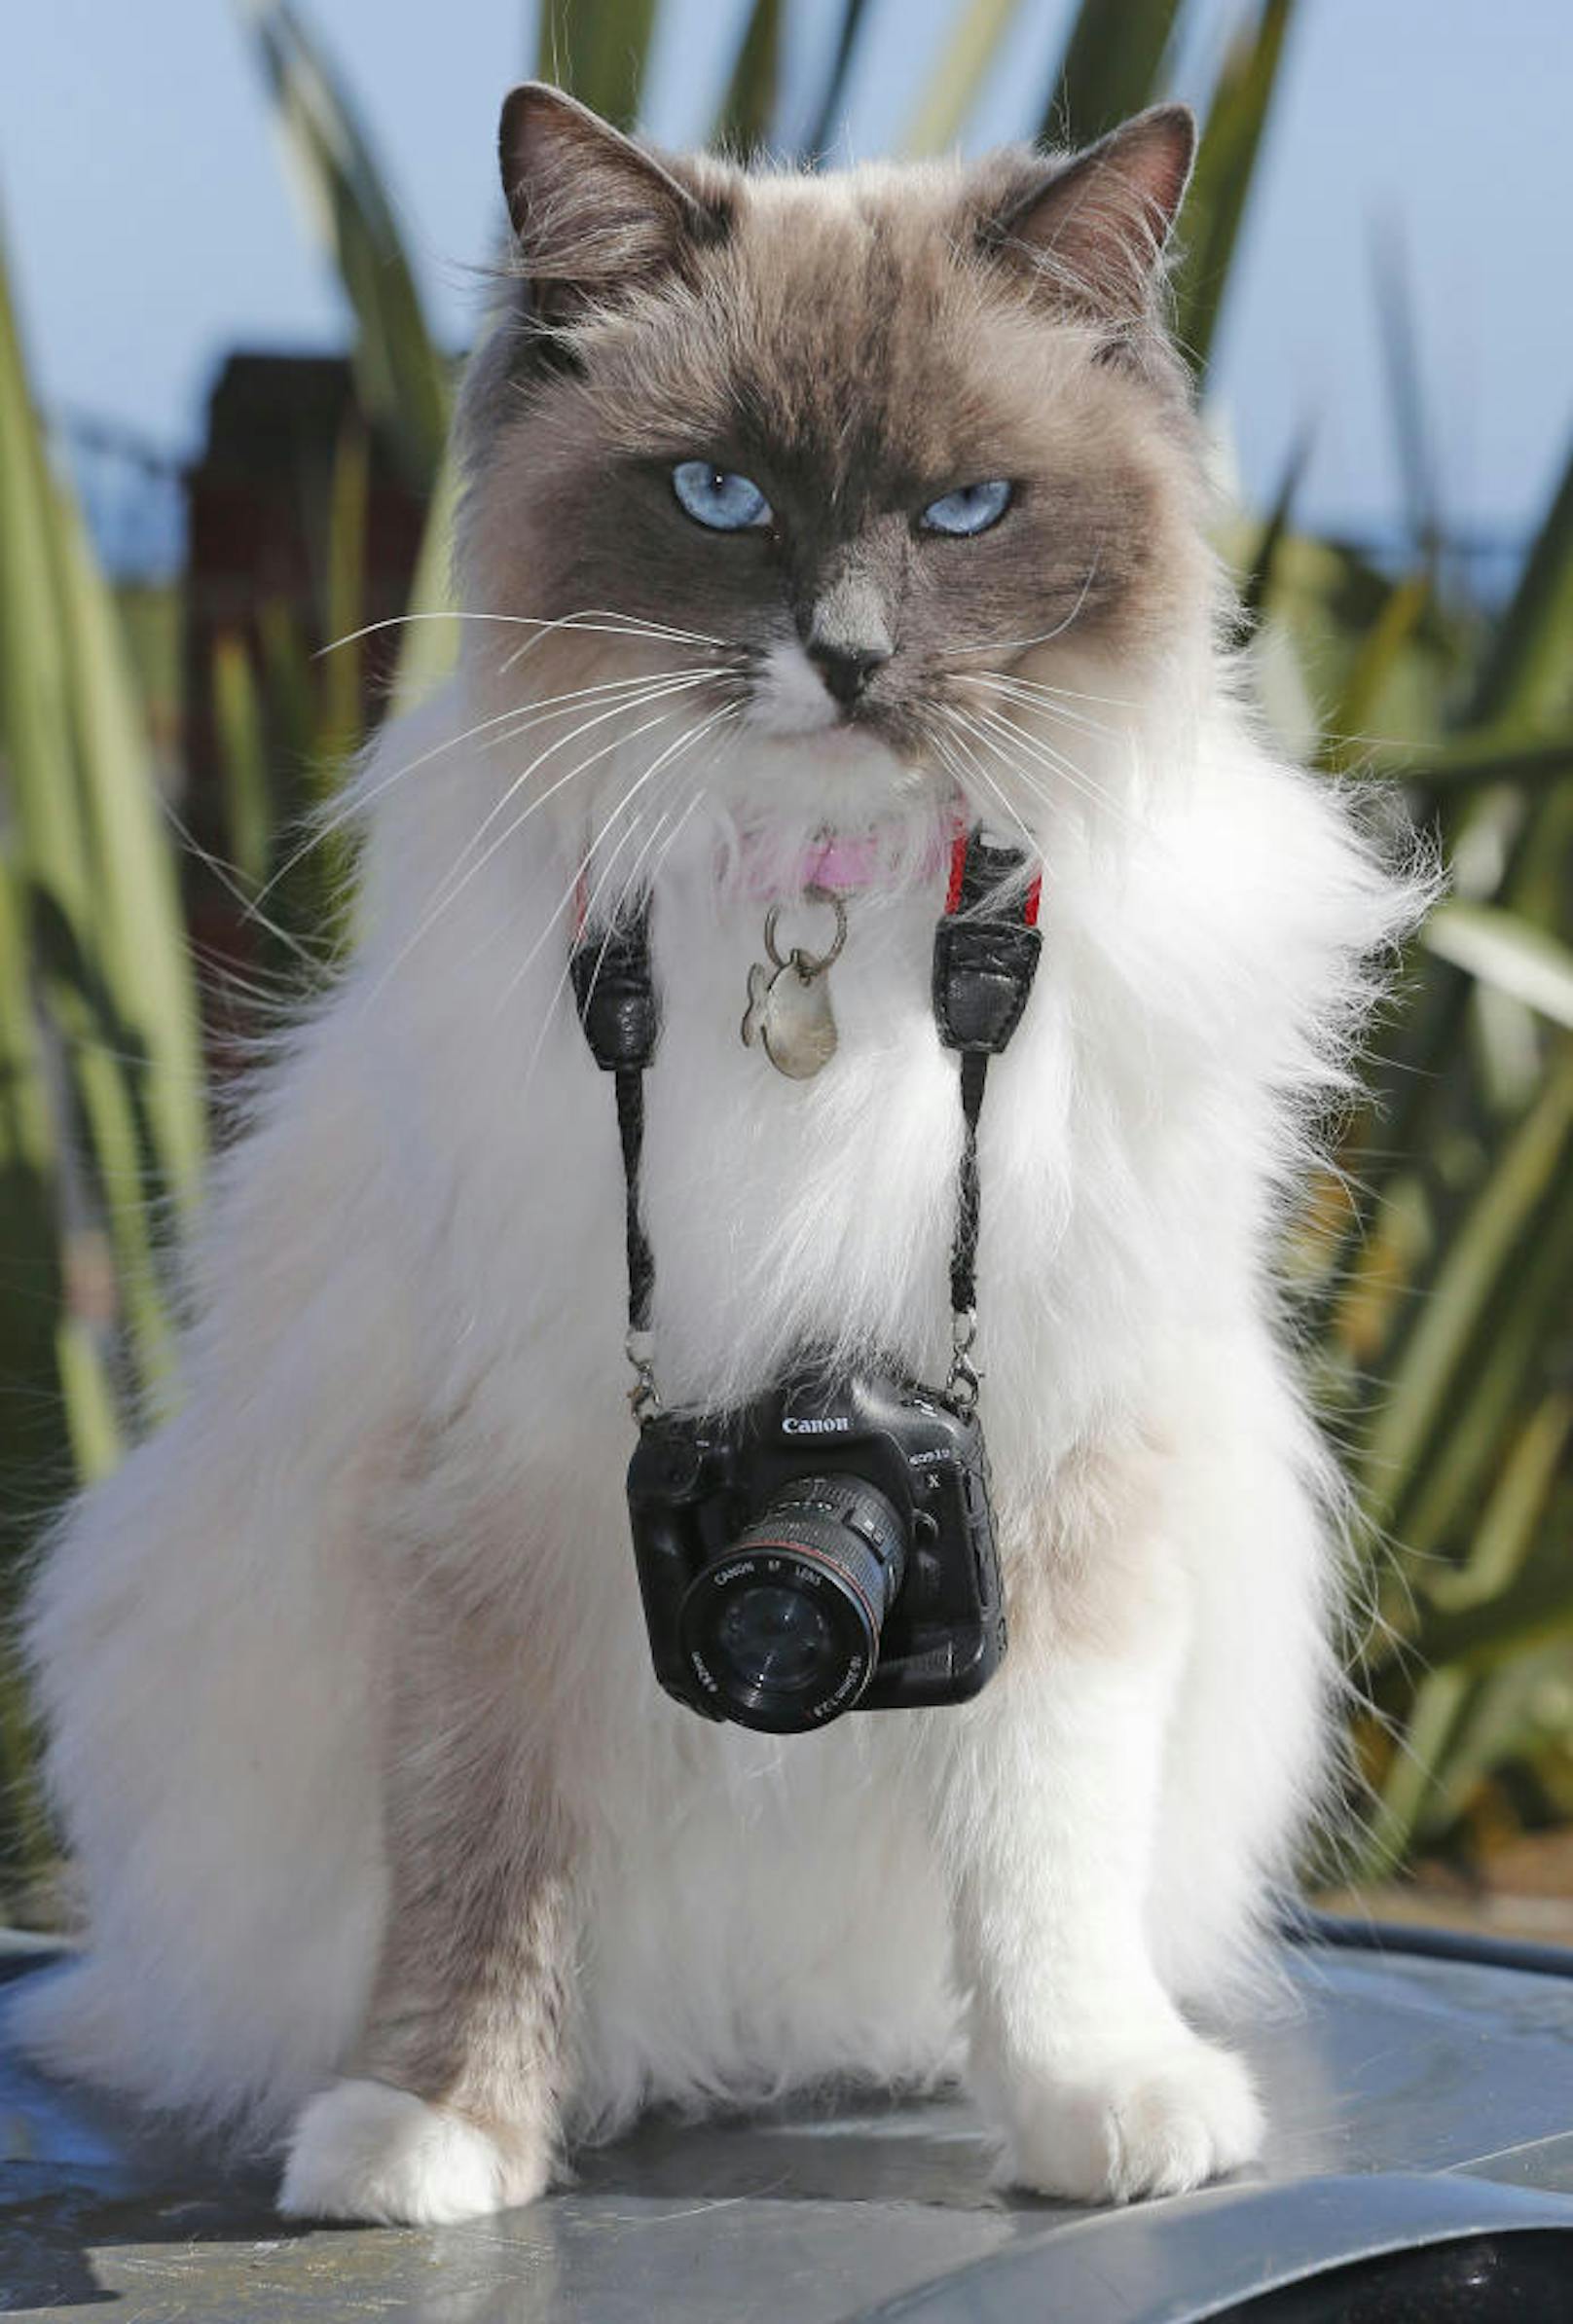 Katze "Ragdoll" sieht mit ihre Mini-Spiegelreflex-Kamera nicht gerade glücklich aus. Vielleicht würde sie lieber vor, als hinter der Kamera stehen.